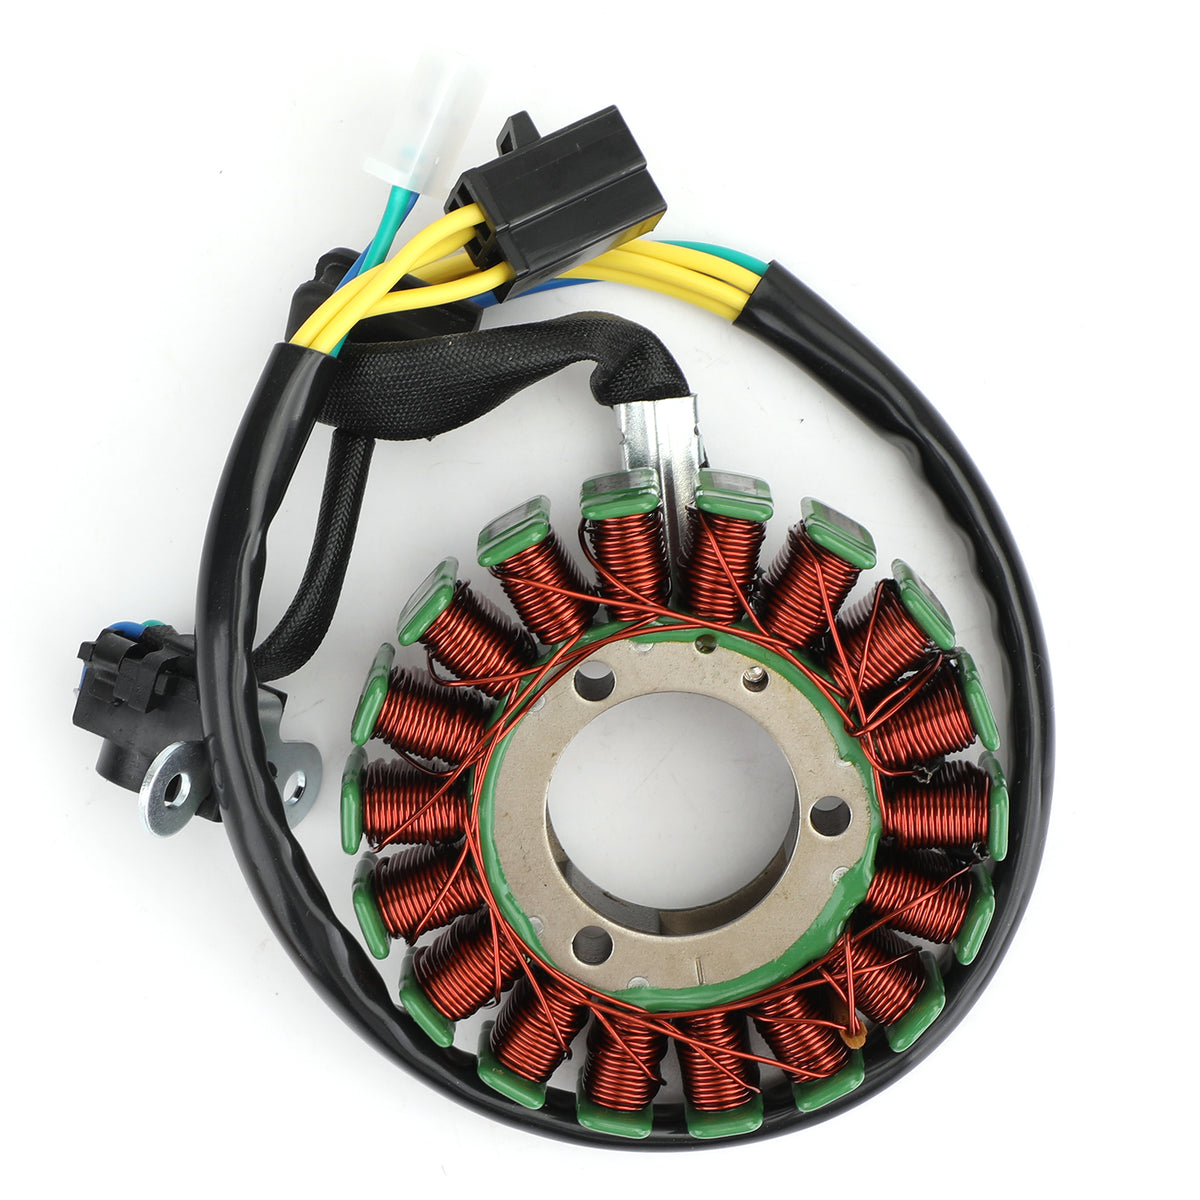 Bobina magnete statore per Suzuki RV125 RV200 Van GZ125 Marauder 98-11 32101-13G10 tramite fedex